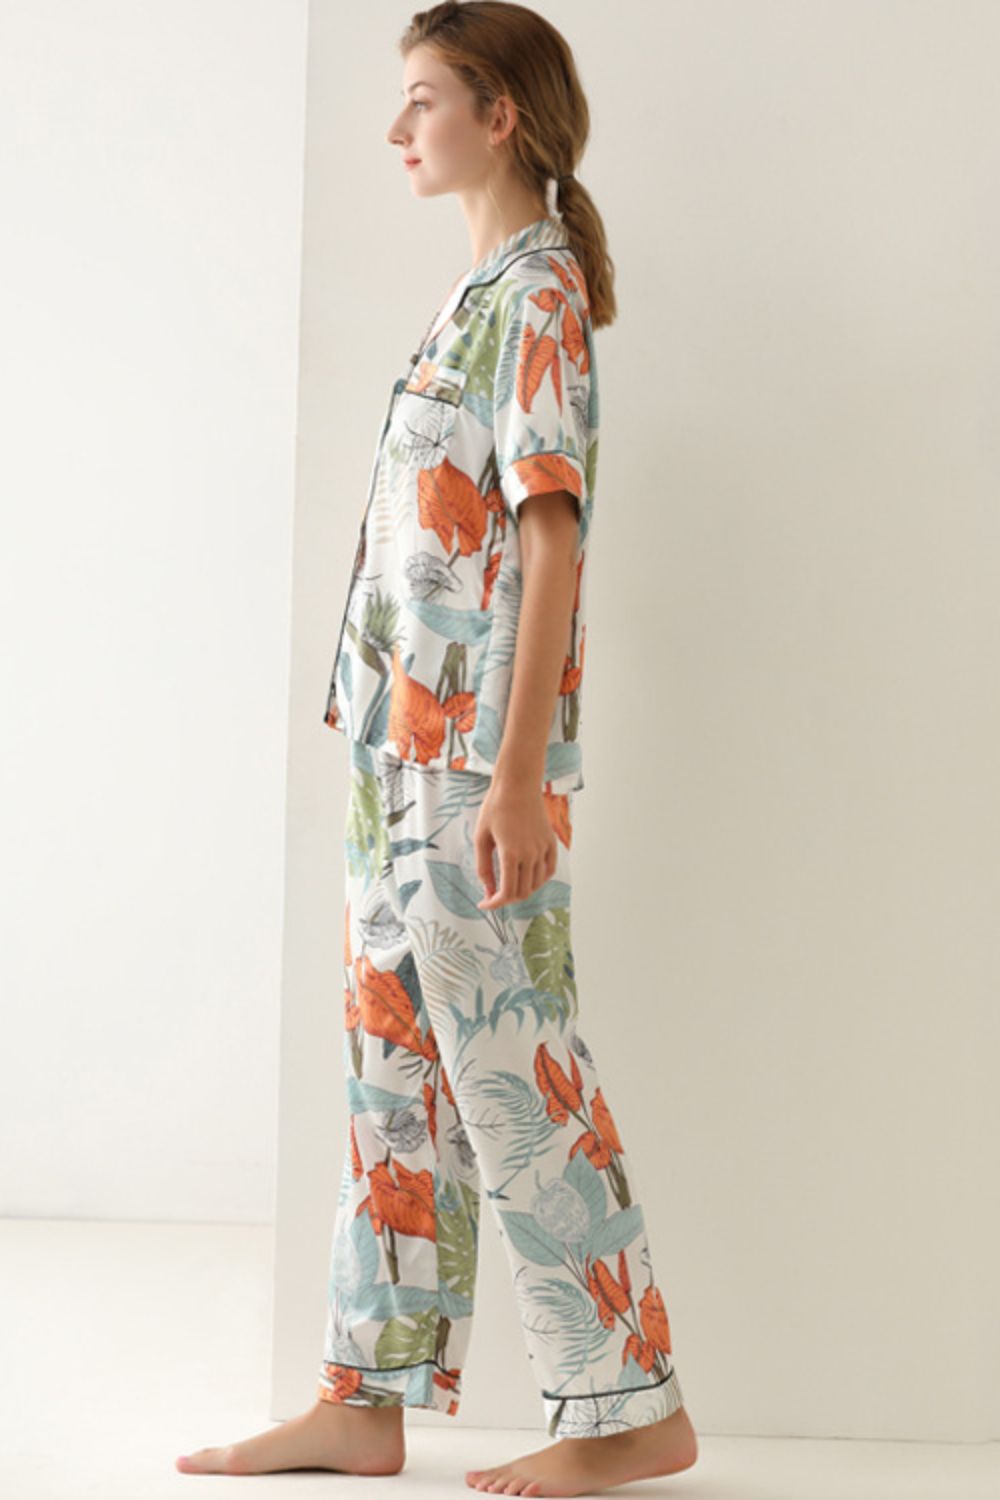 Women’s Botanical Print Button-Up Top and Pants Pajama Set